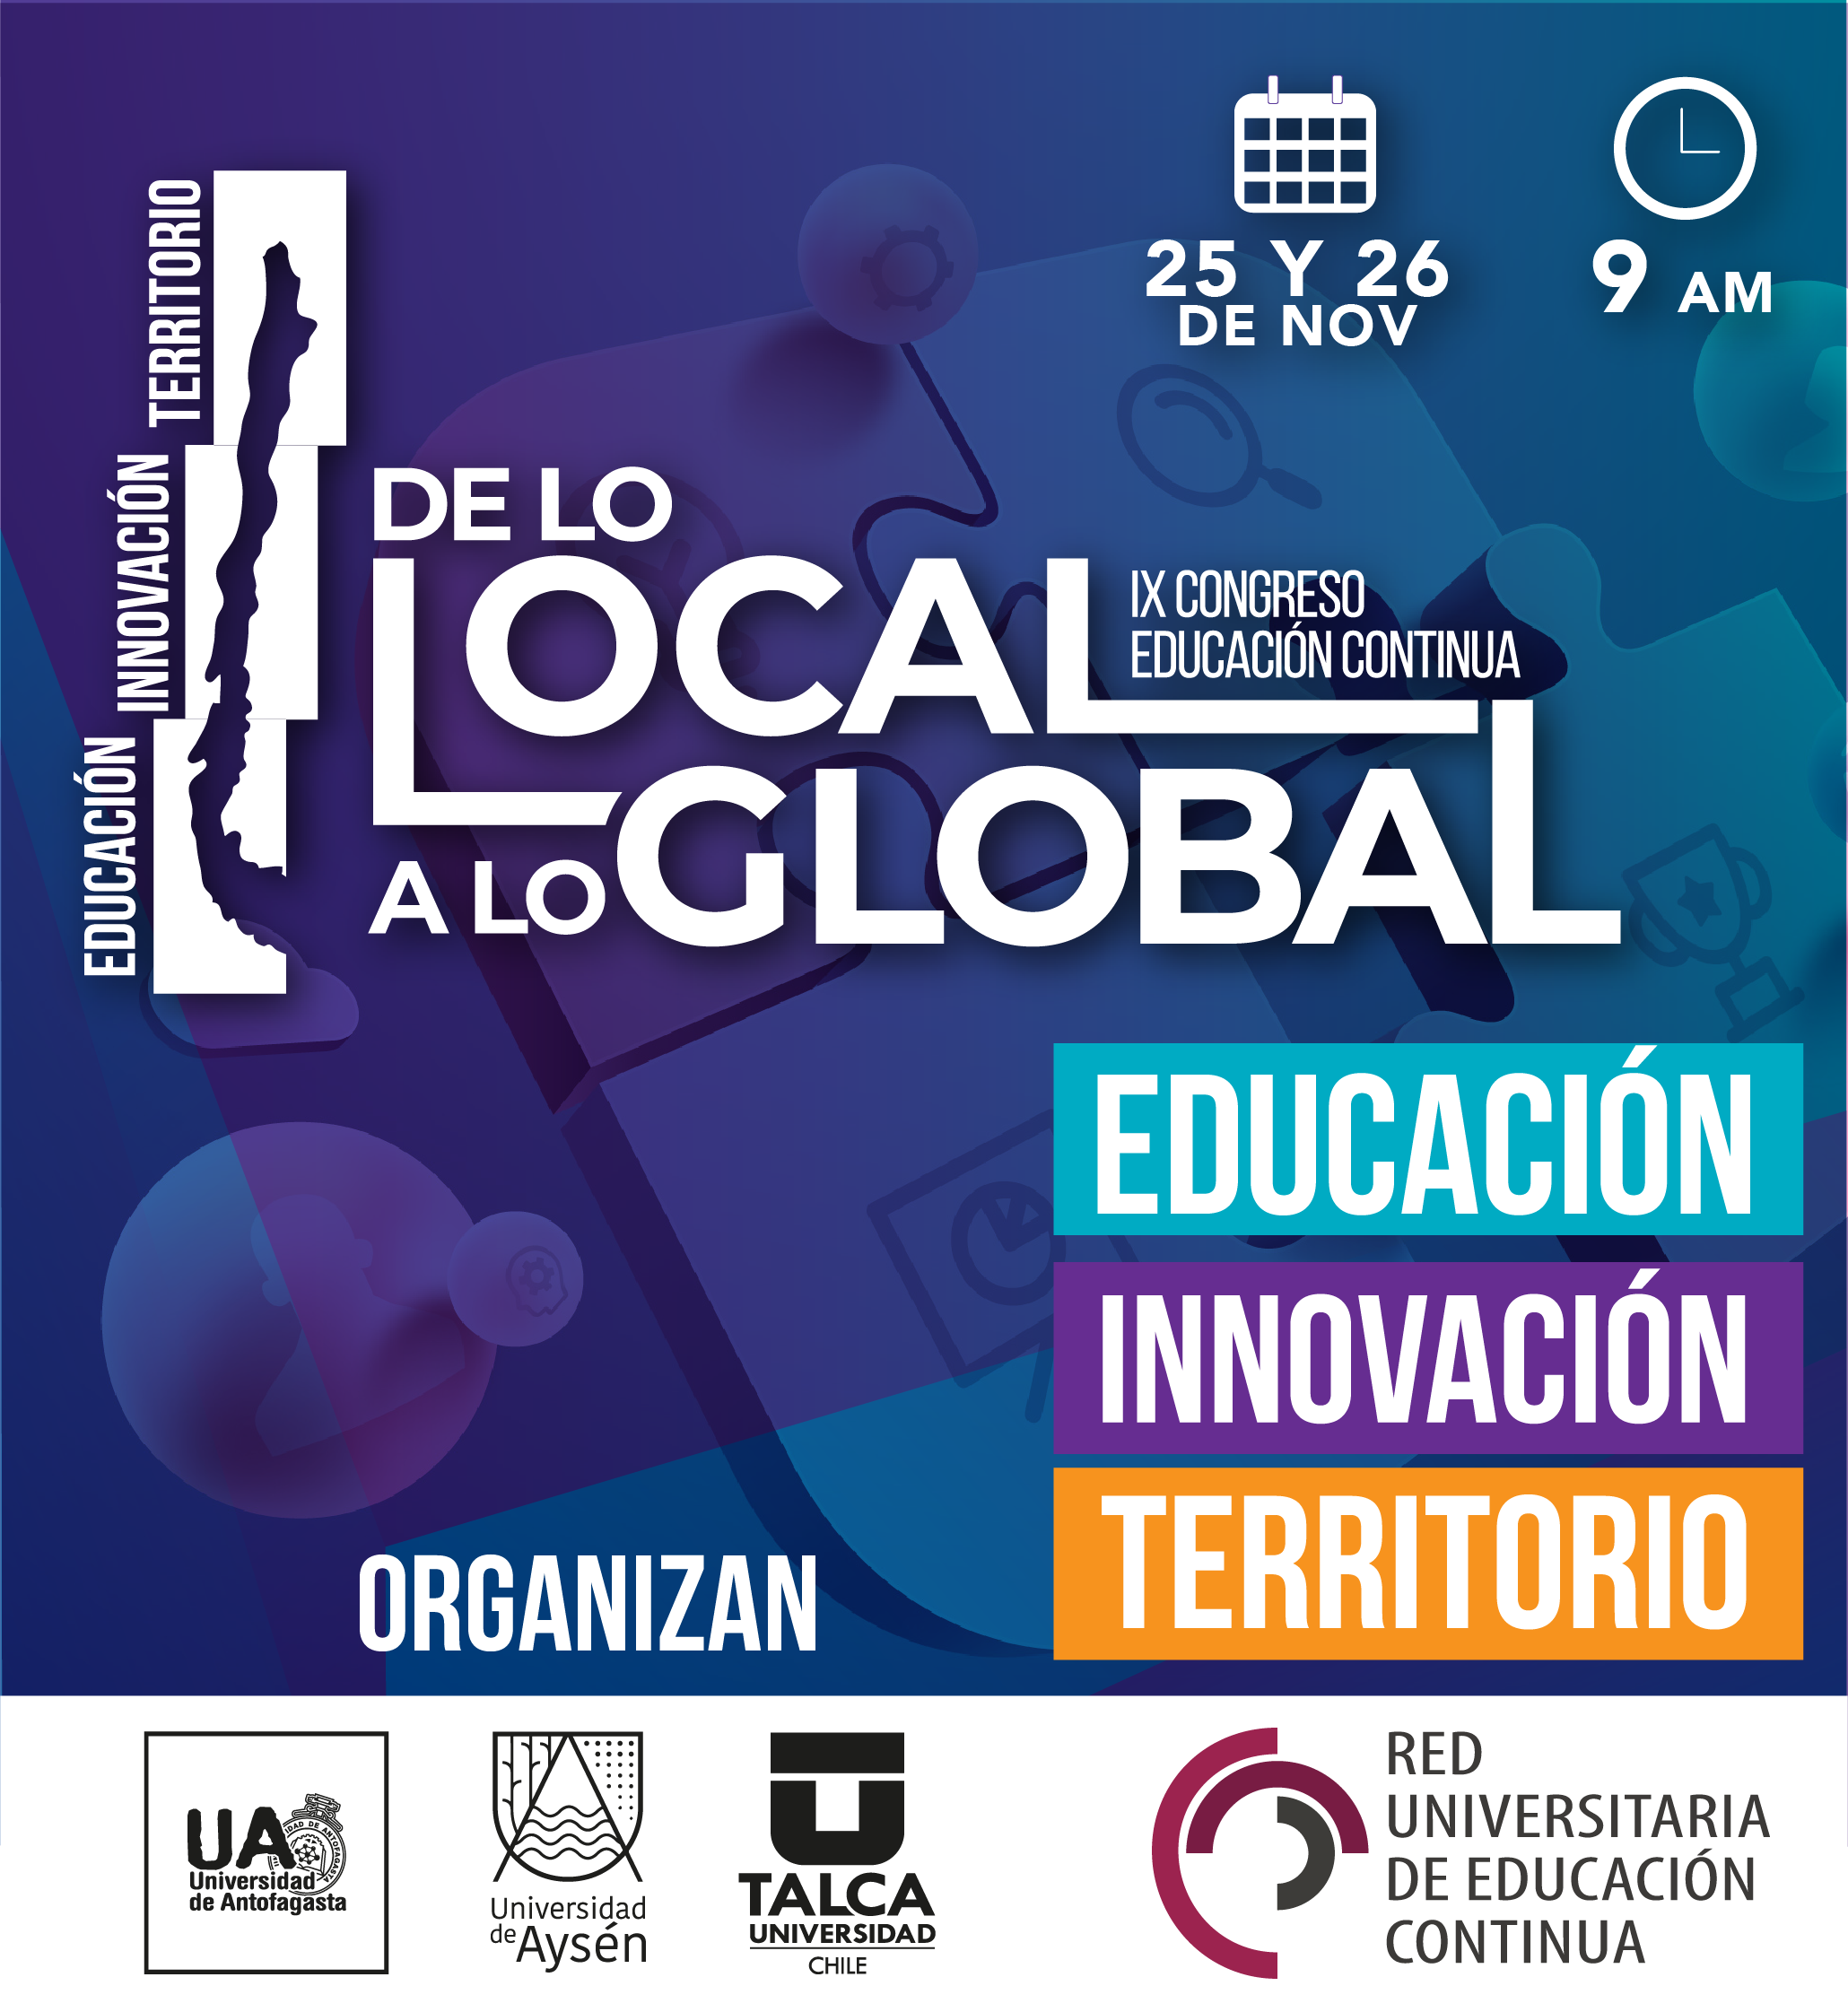 IX Congreso de Educación Continua "De lo local a lo global"